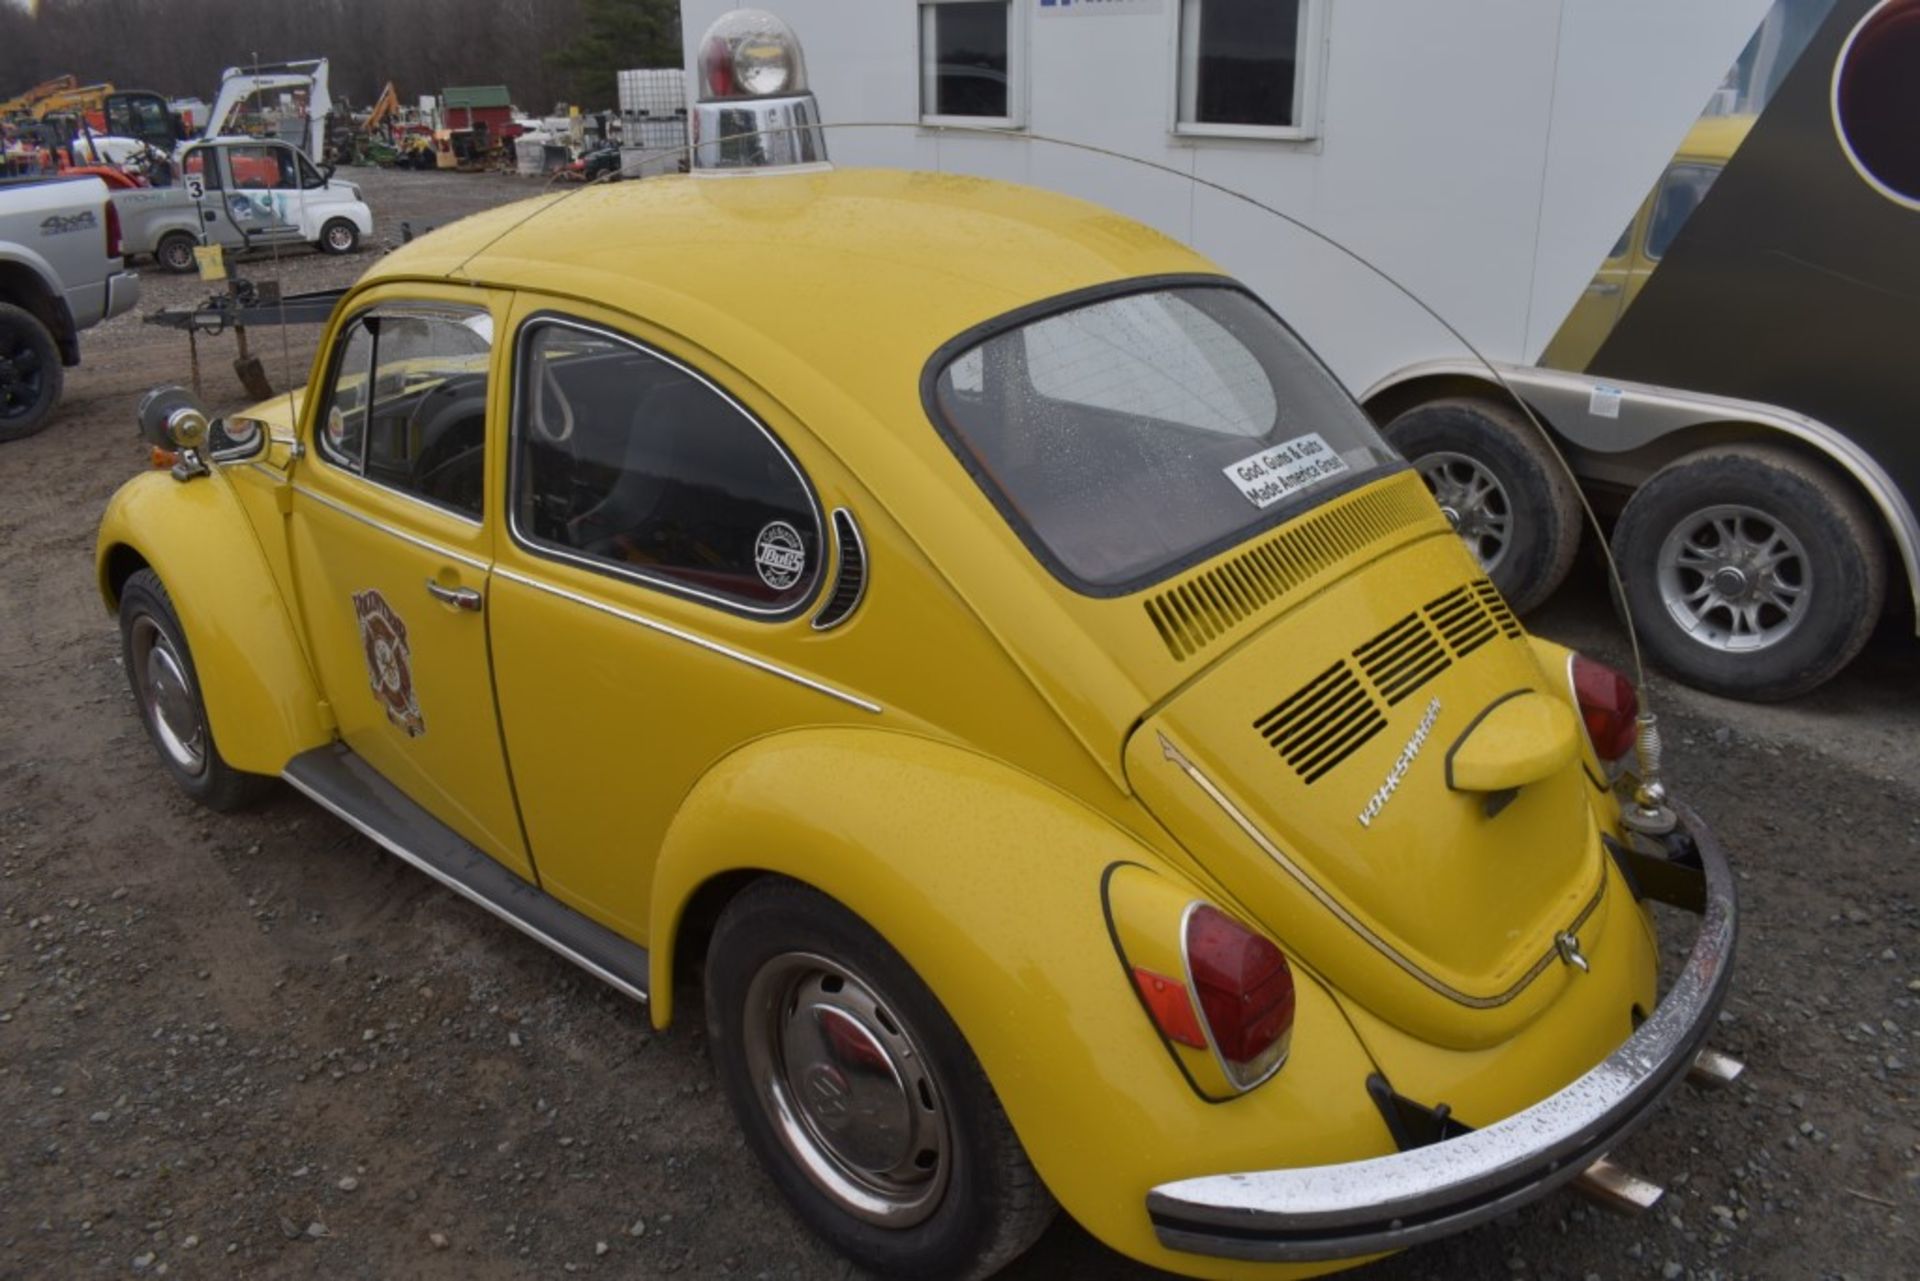 1972 Volkswagen Beetle - Image 11 of 42